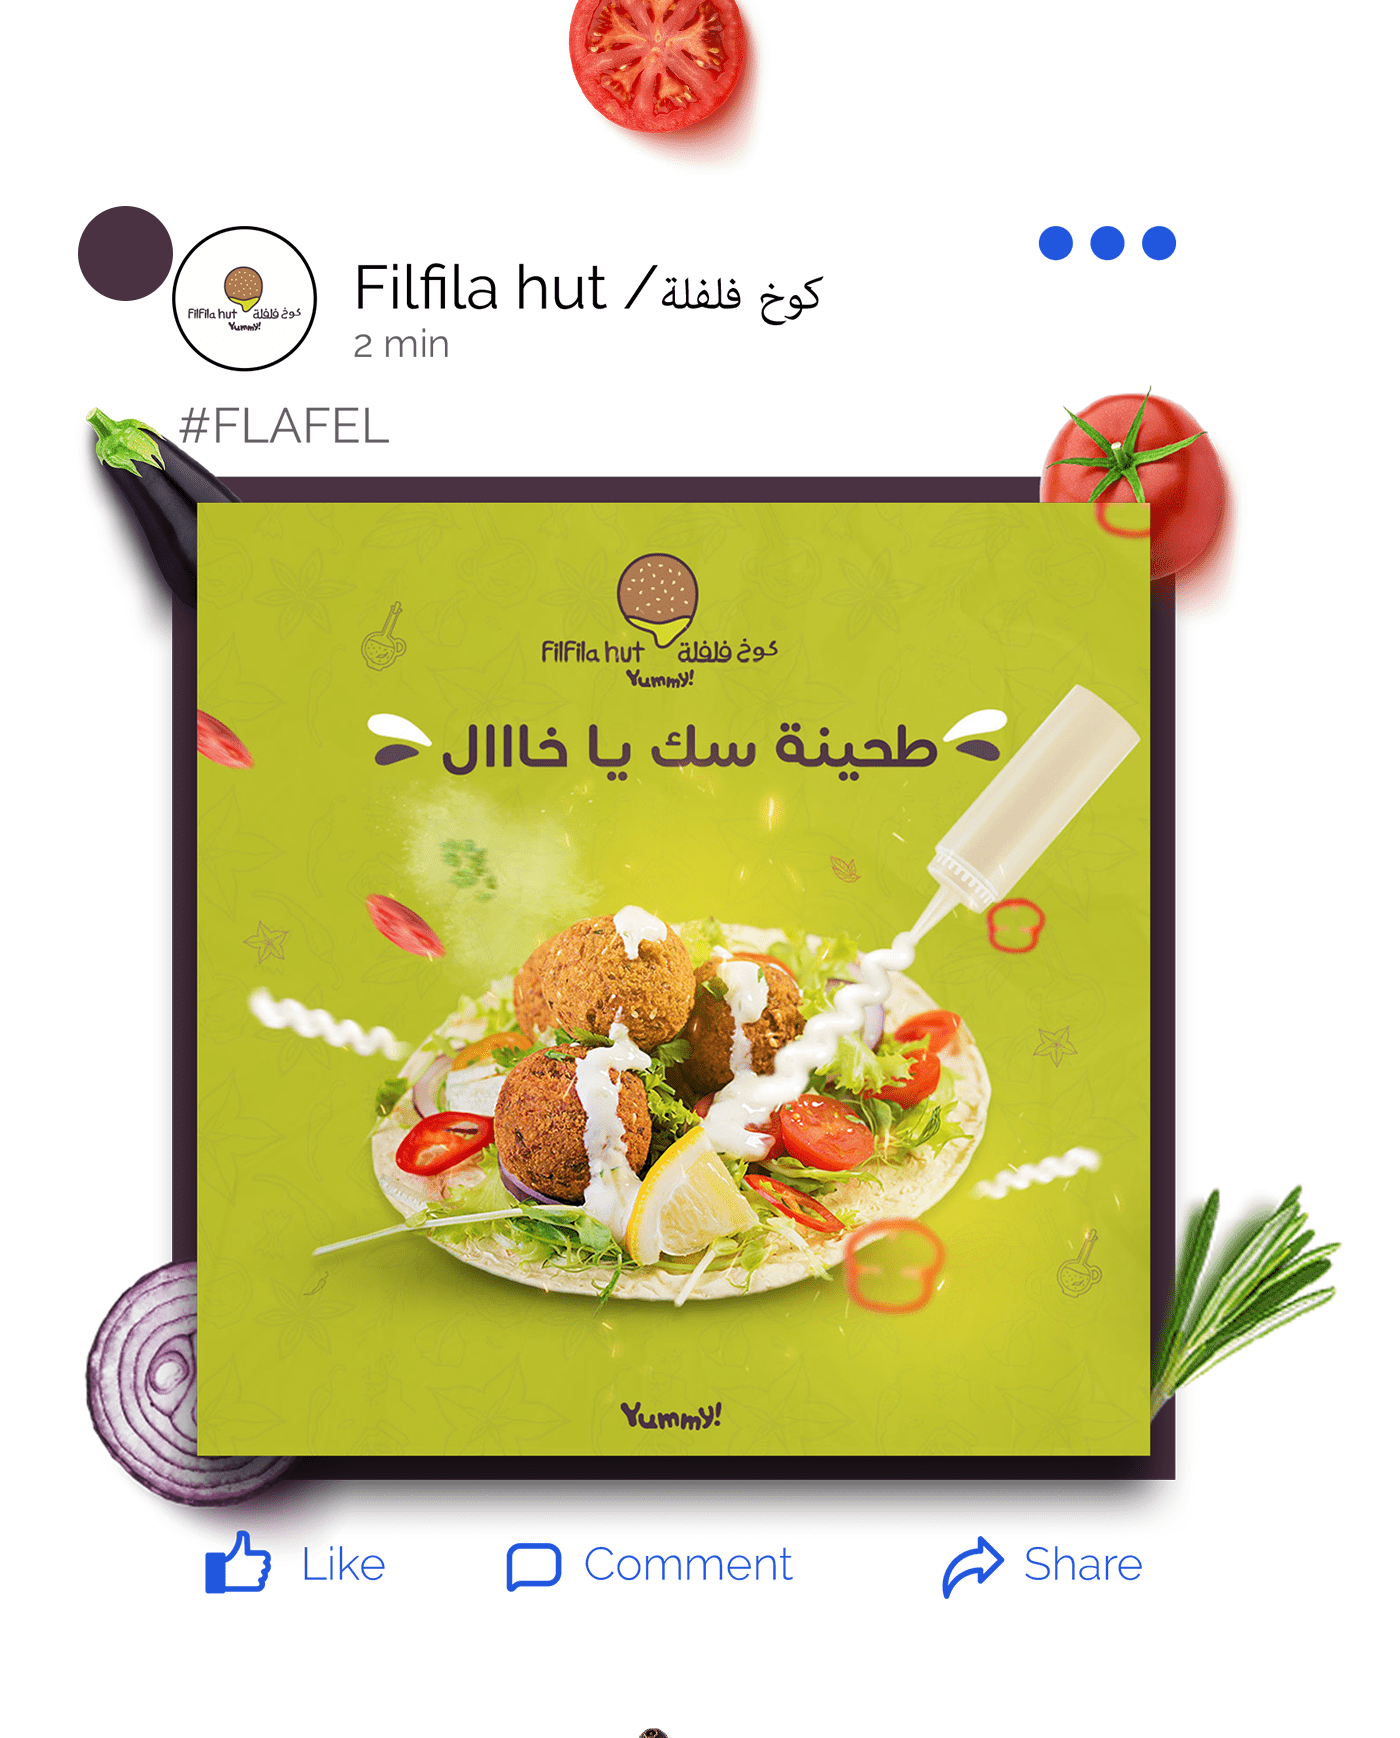 ads Advertising  campaign falafel Food  instagram marketing   media restaurant social media